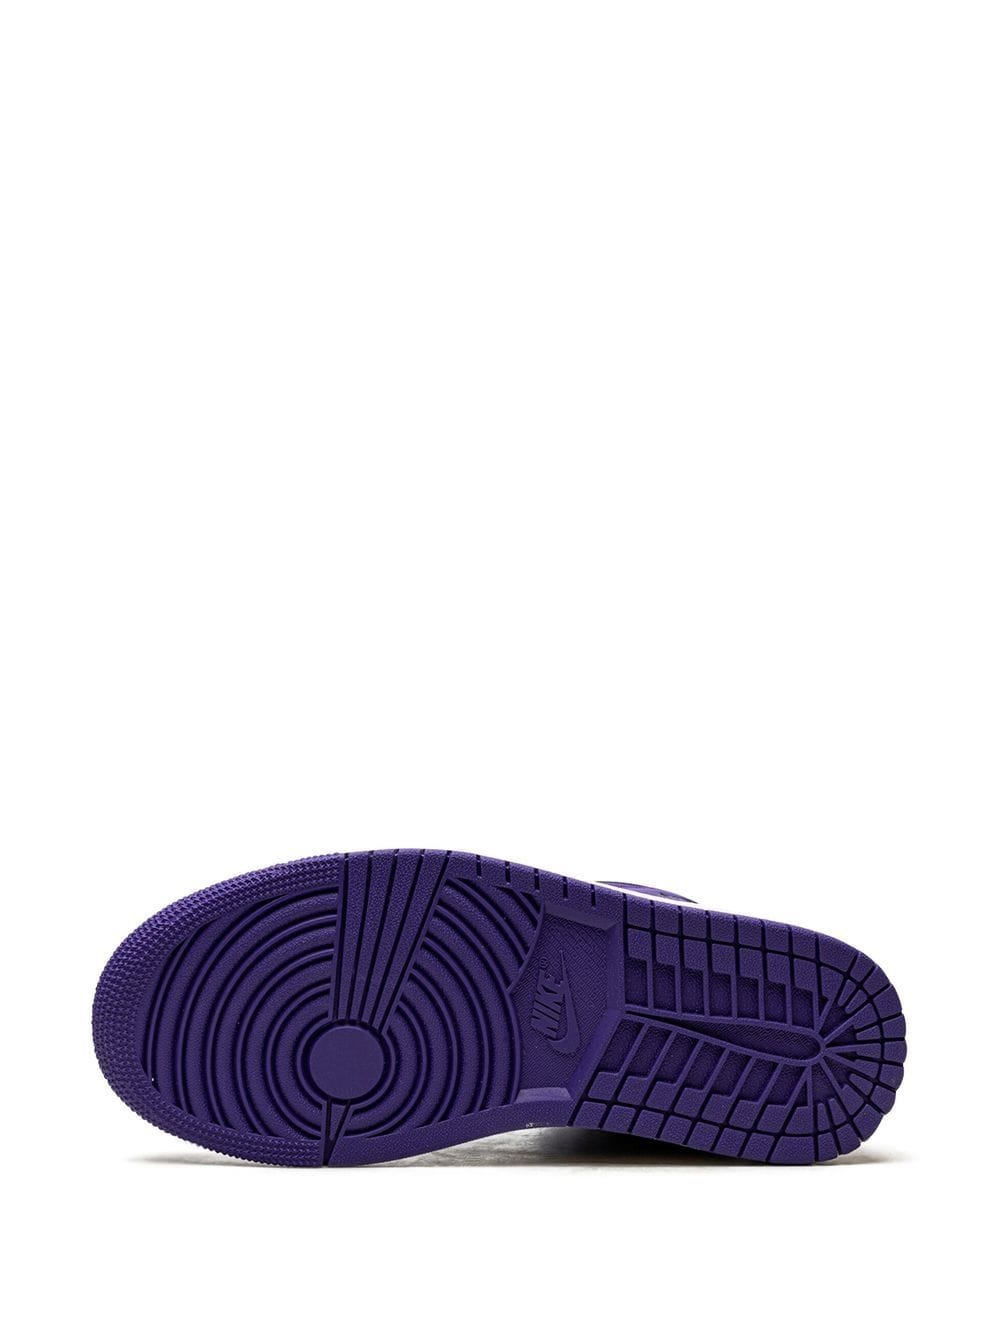 Shop Jordan 1 Mid "black/purple" Sneakers